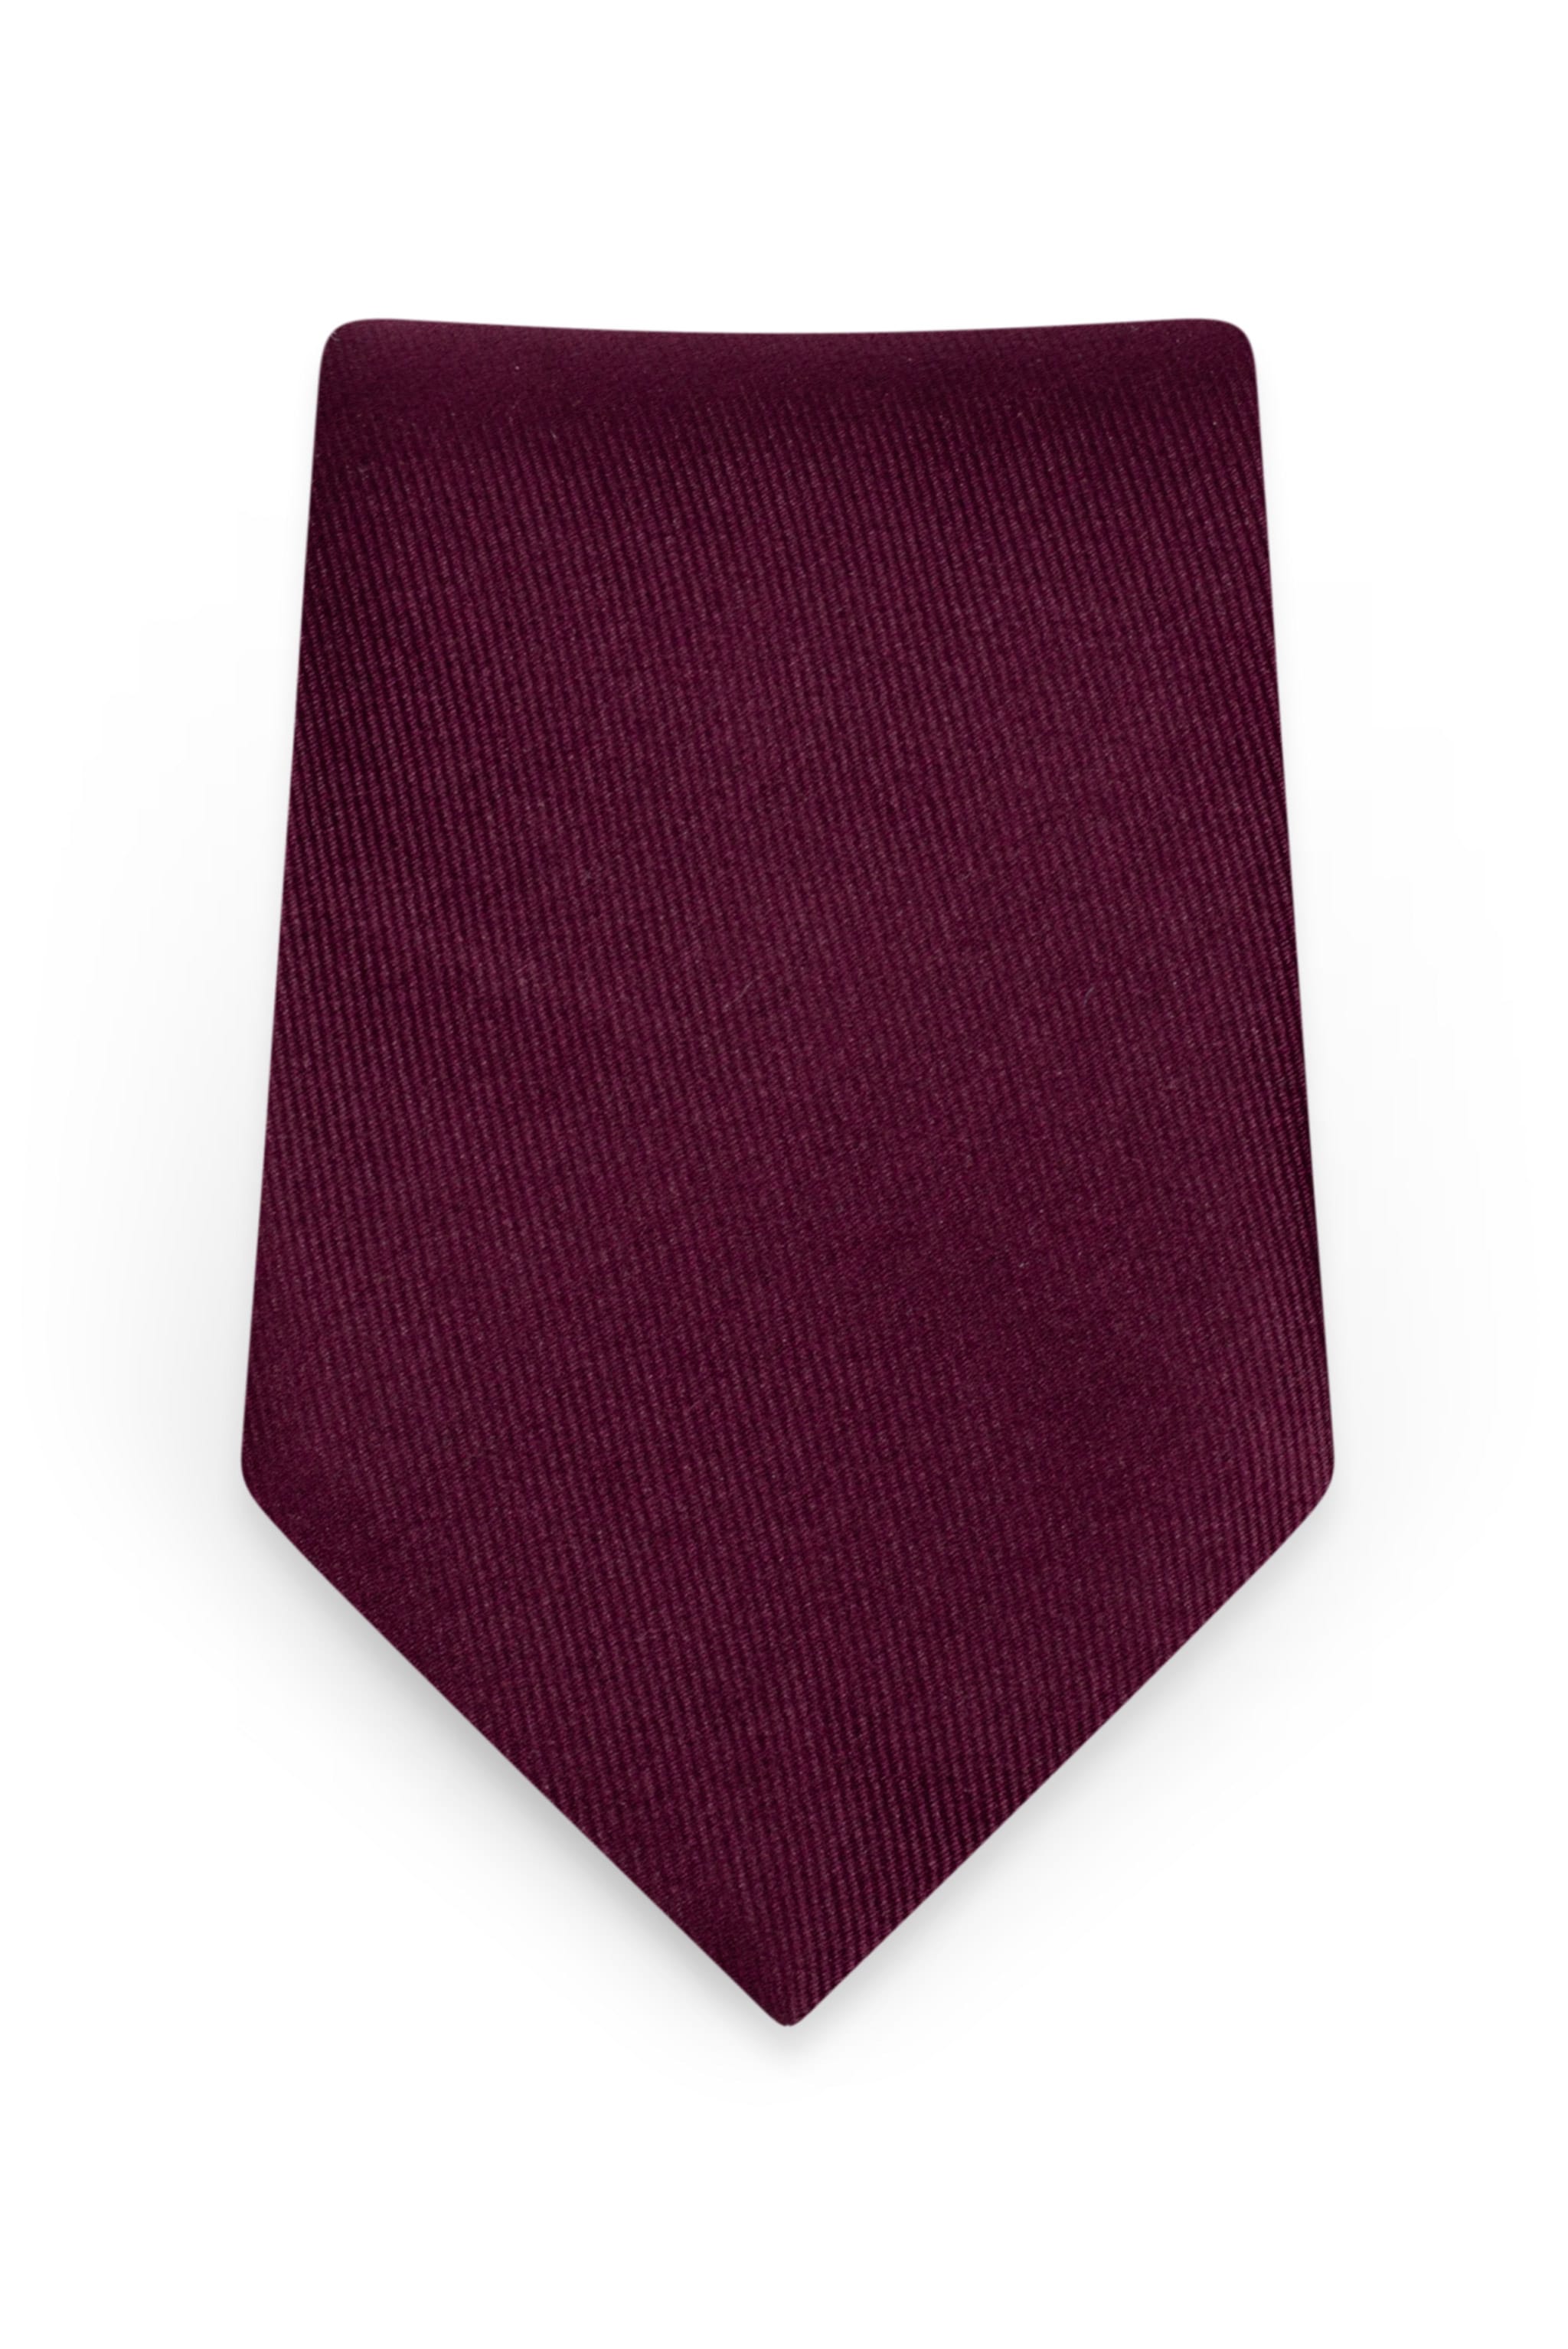 Solid Wine Self-Tie Windsor Tie